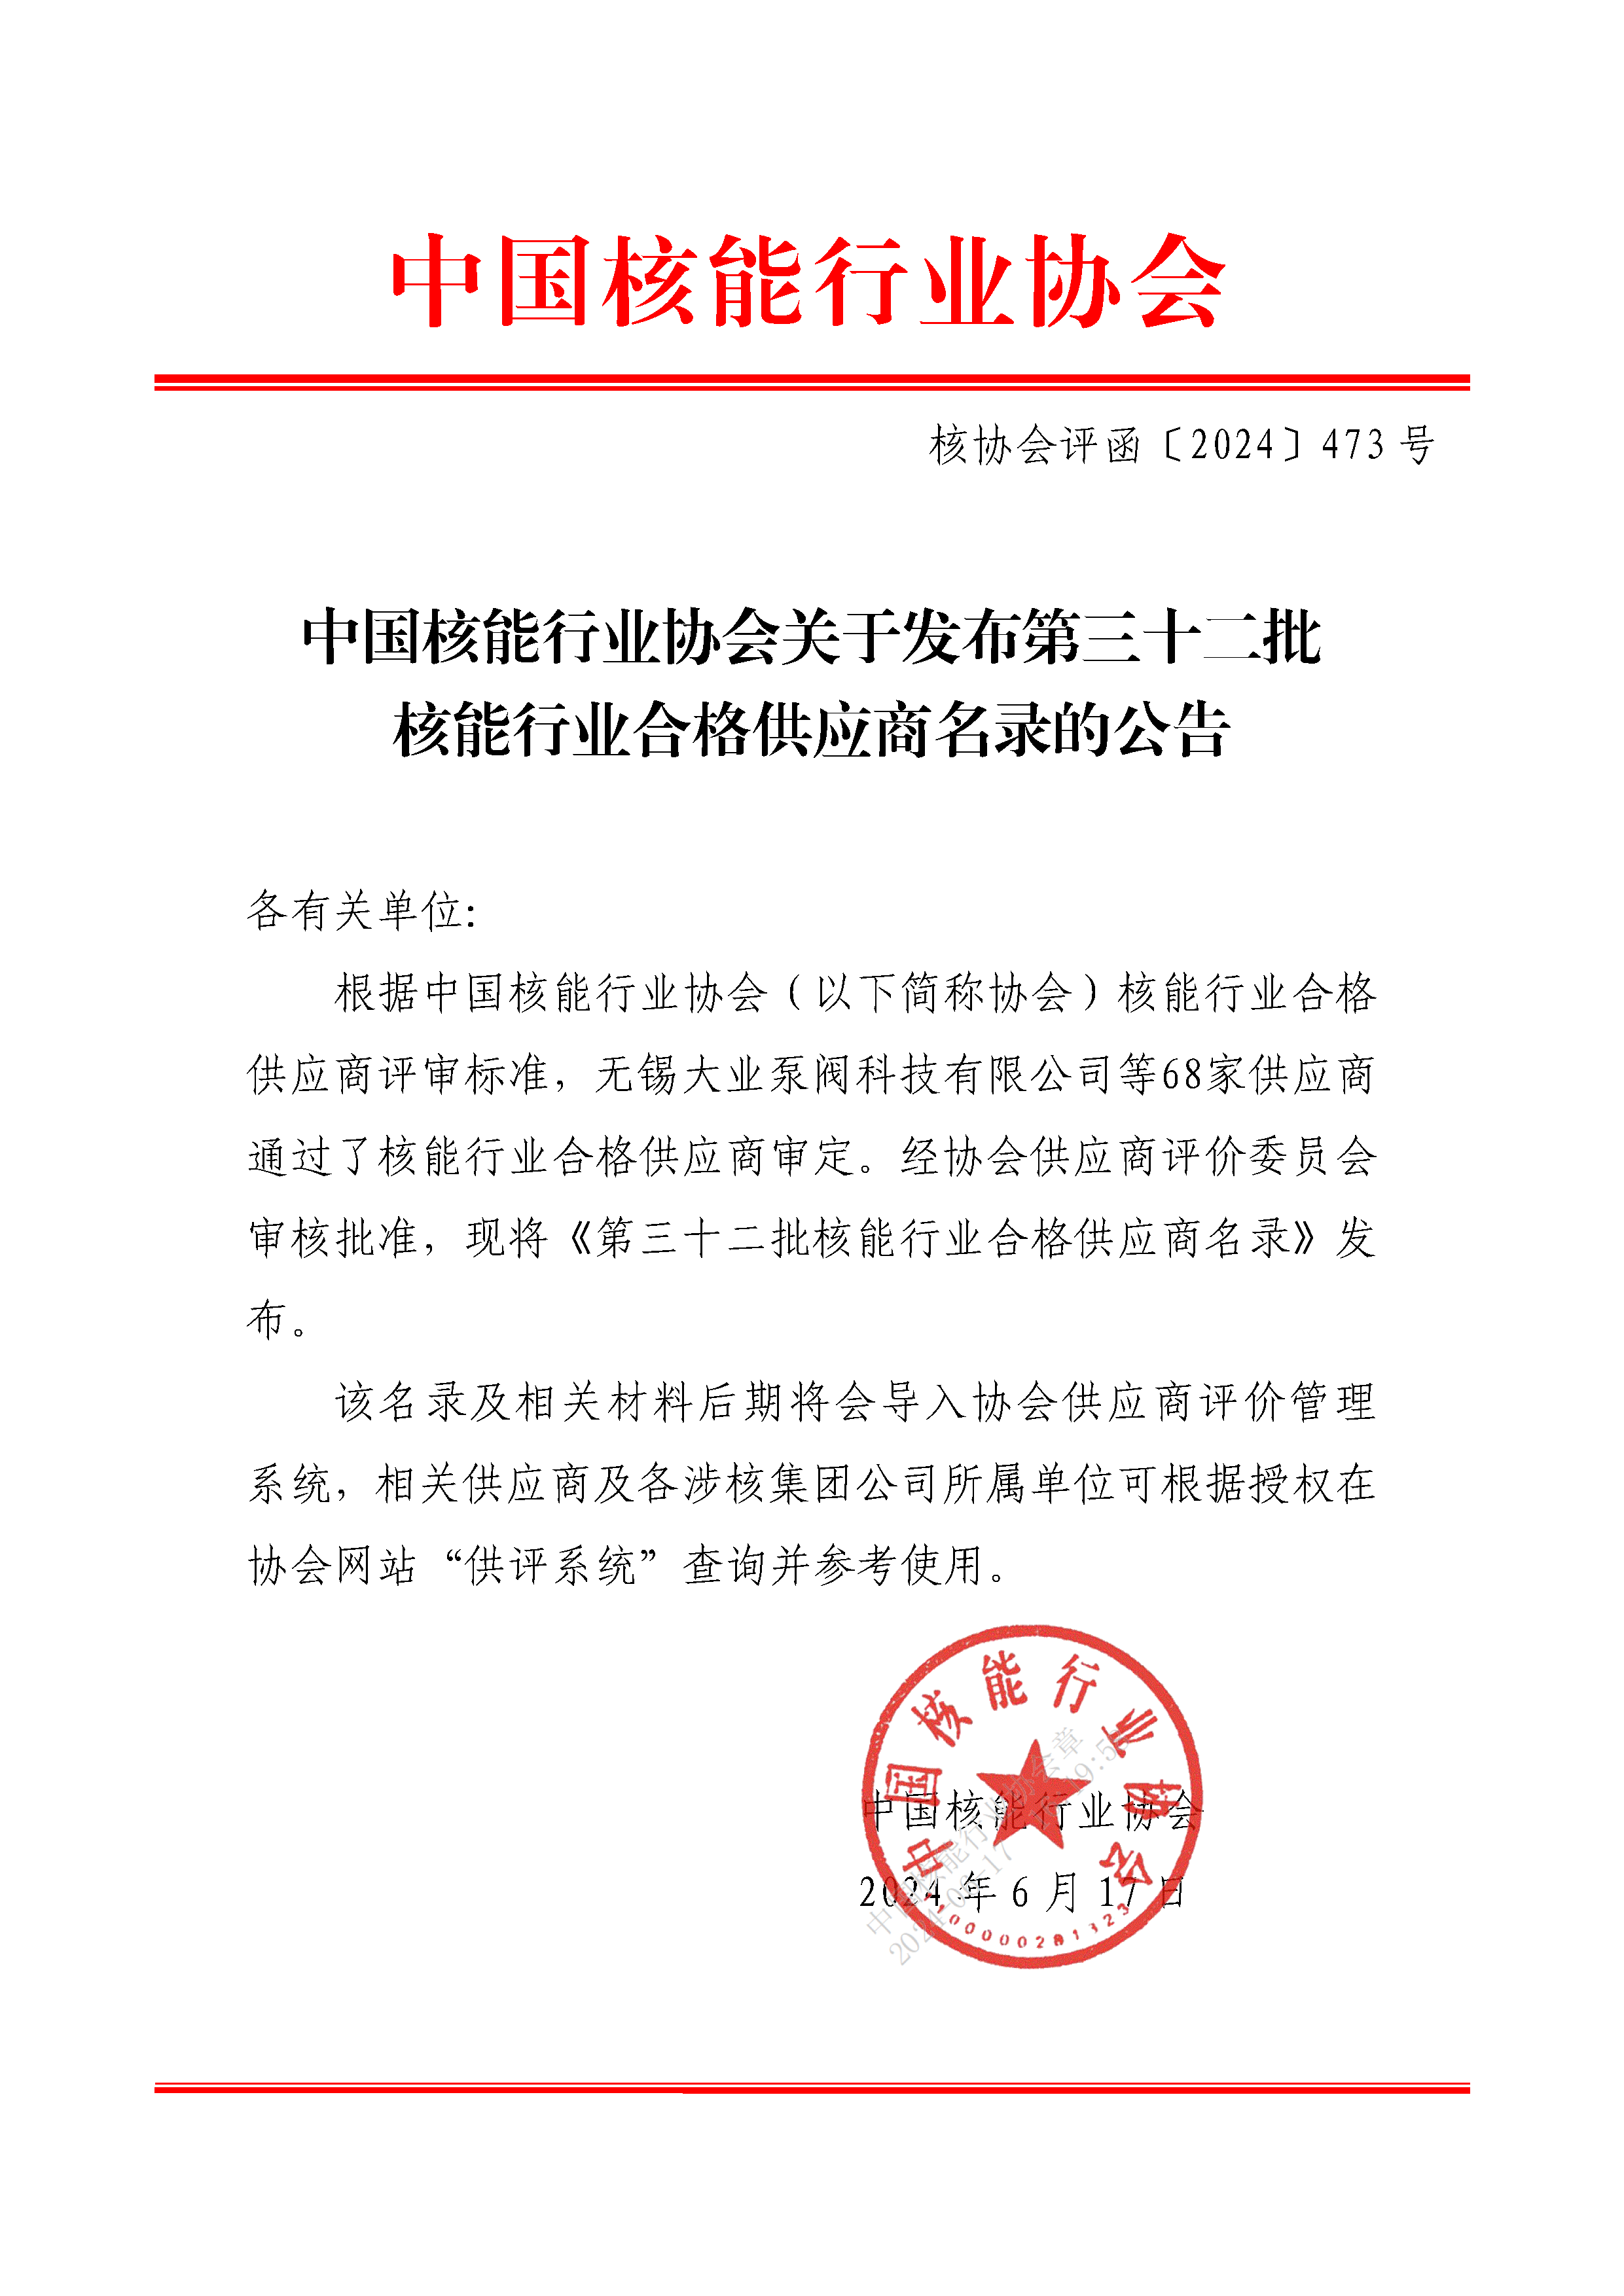 中国核能行业协会关于发布第三十二批核能行业合格供应商名录的公告_页面_1.png